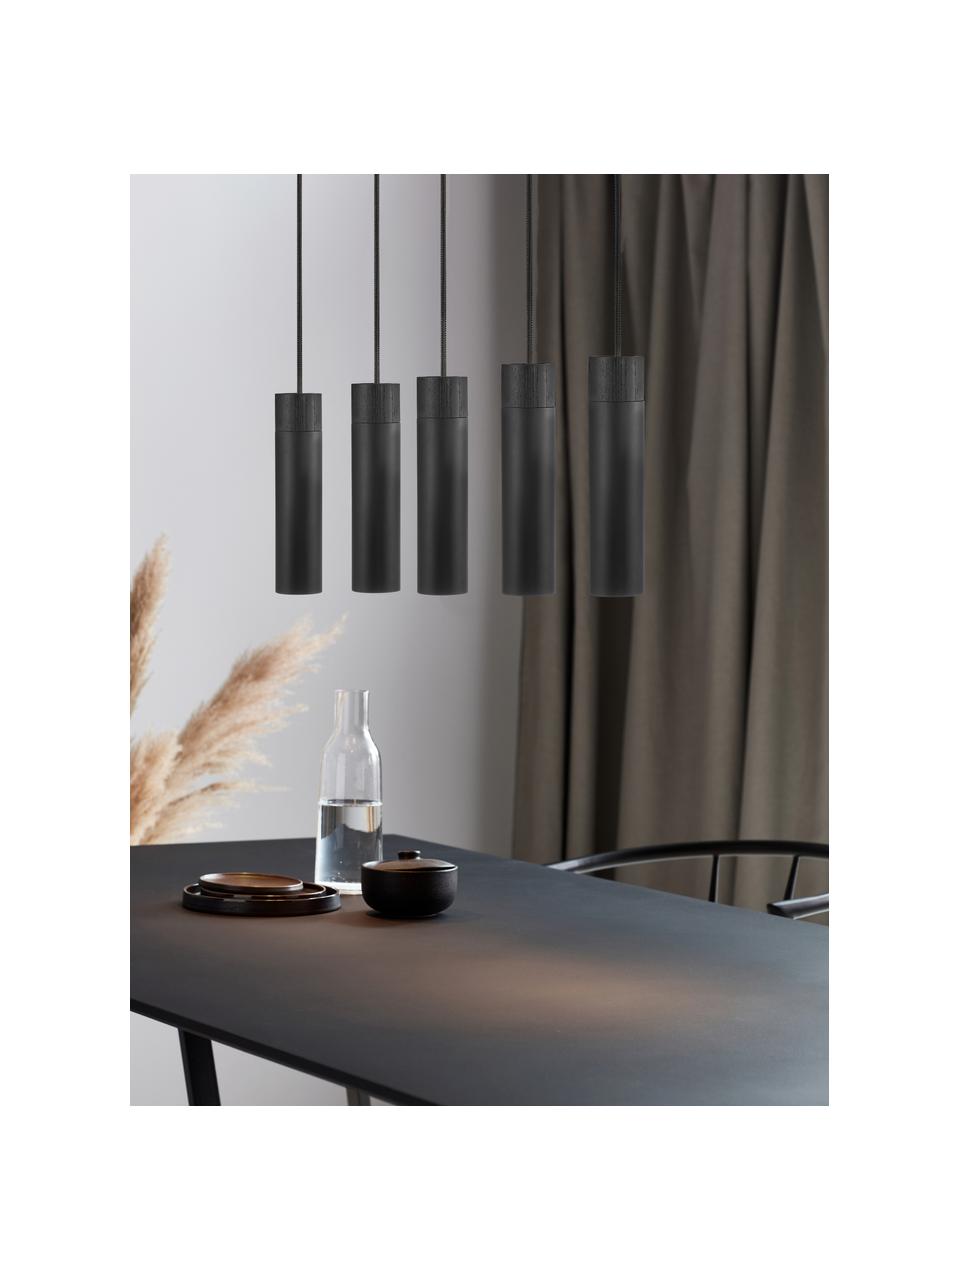 Grote hanglamp Tilo in zwart met houten decoratie, Lampenkap: gecoat metaal, Decoratie: hout, Baldakijn: gecoat metaal, Zwart, B 81 x H 25 cm